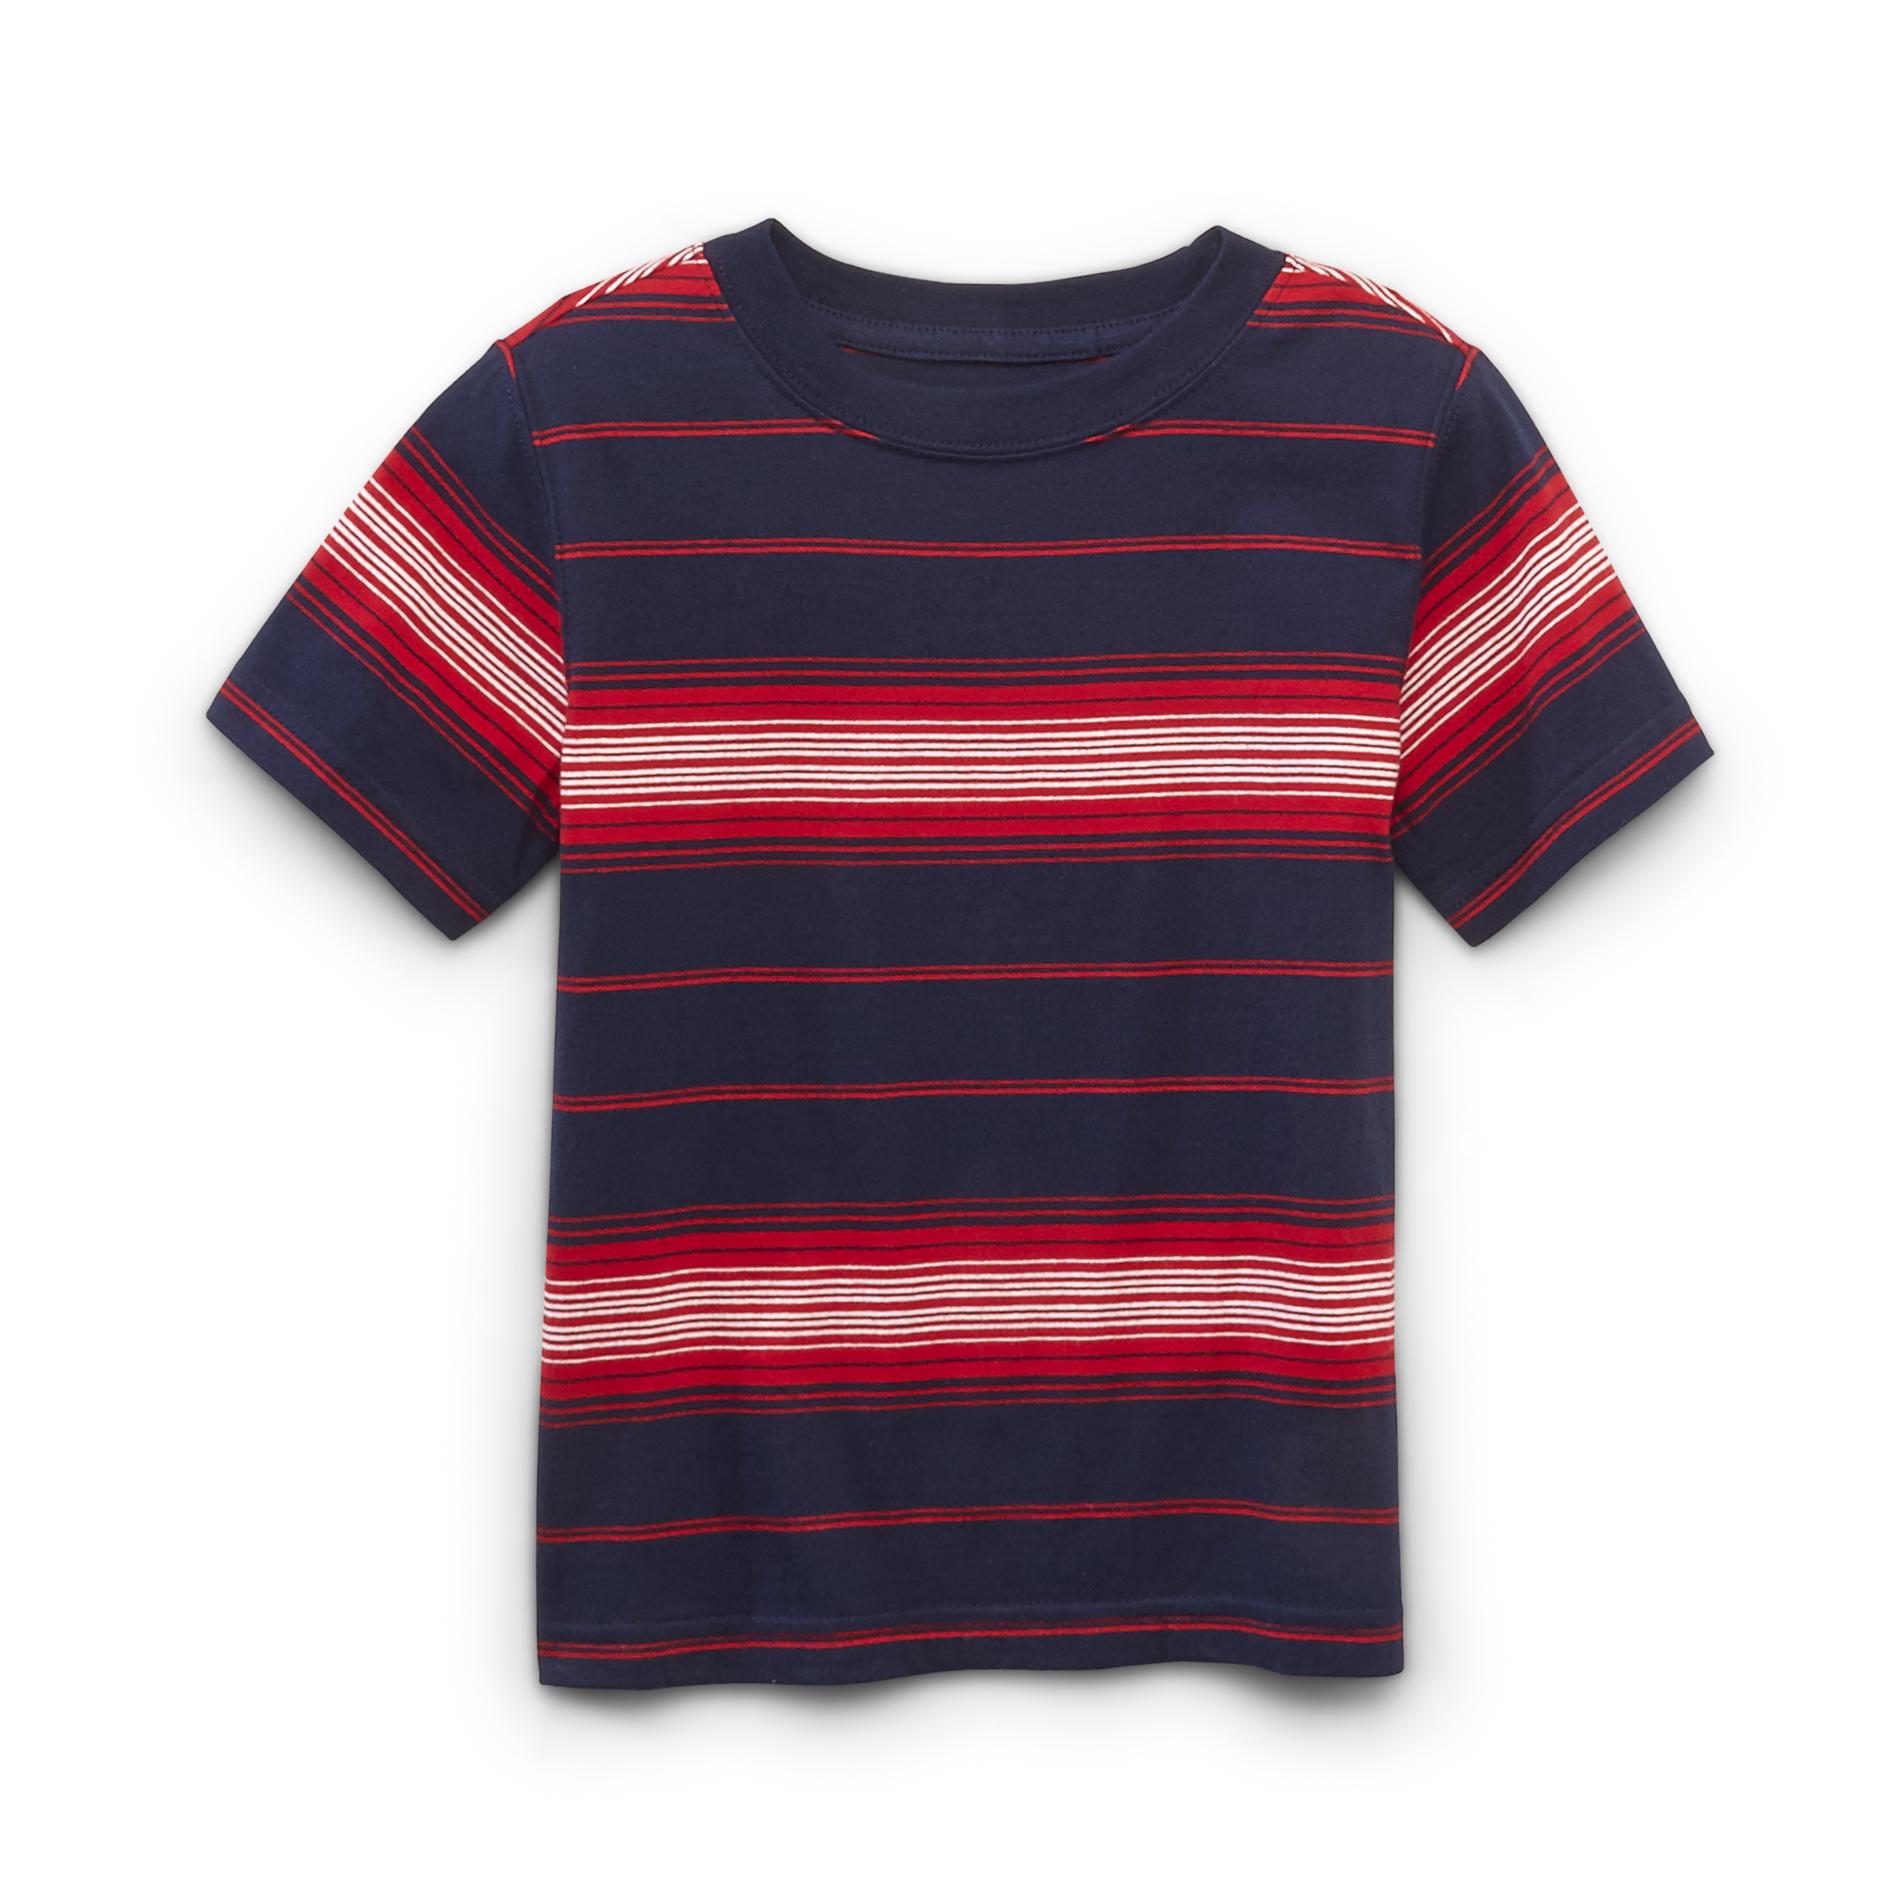 Toughskins Boy's Short-Sleeve T-Shirt - Striped